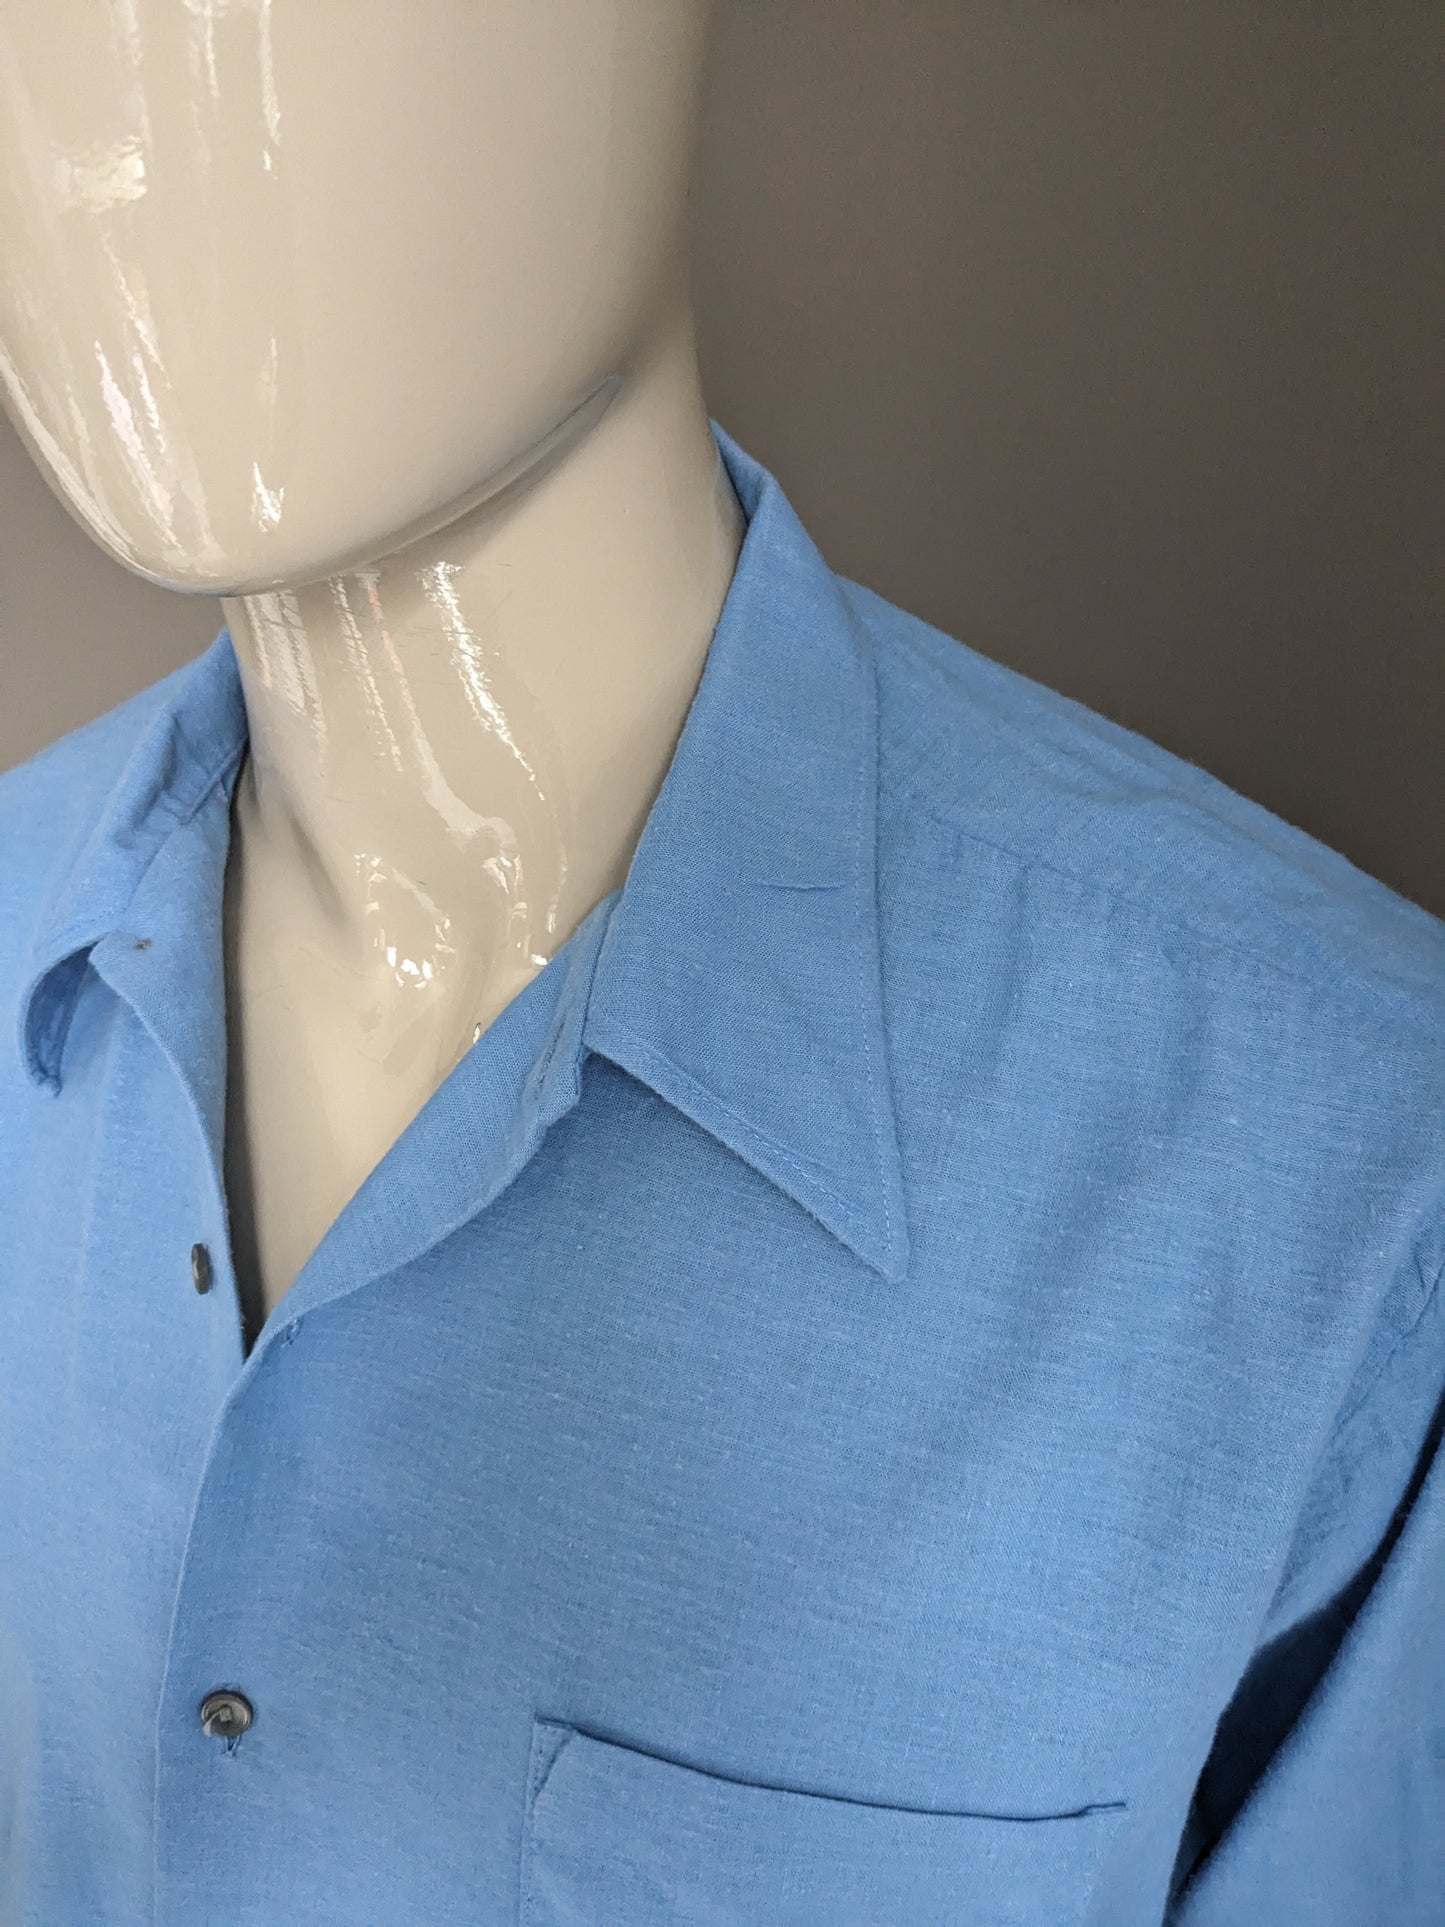 Chemise vintage des années 70 avec collier ponctuel. Couleur bleue. Taille 2xl / xxl.